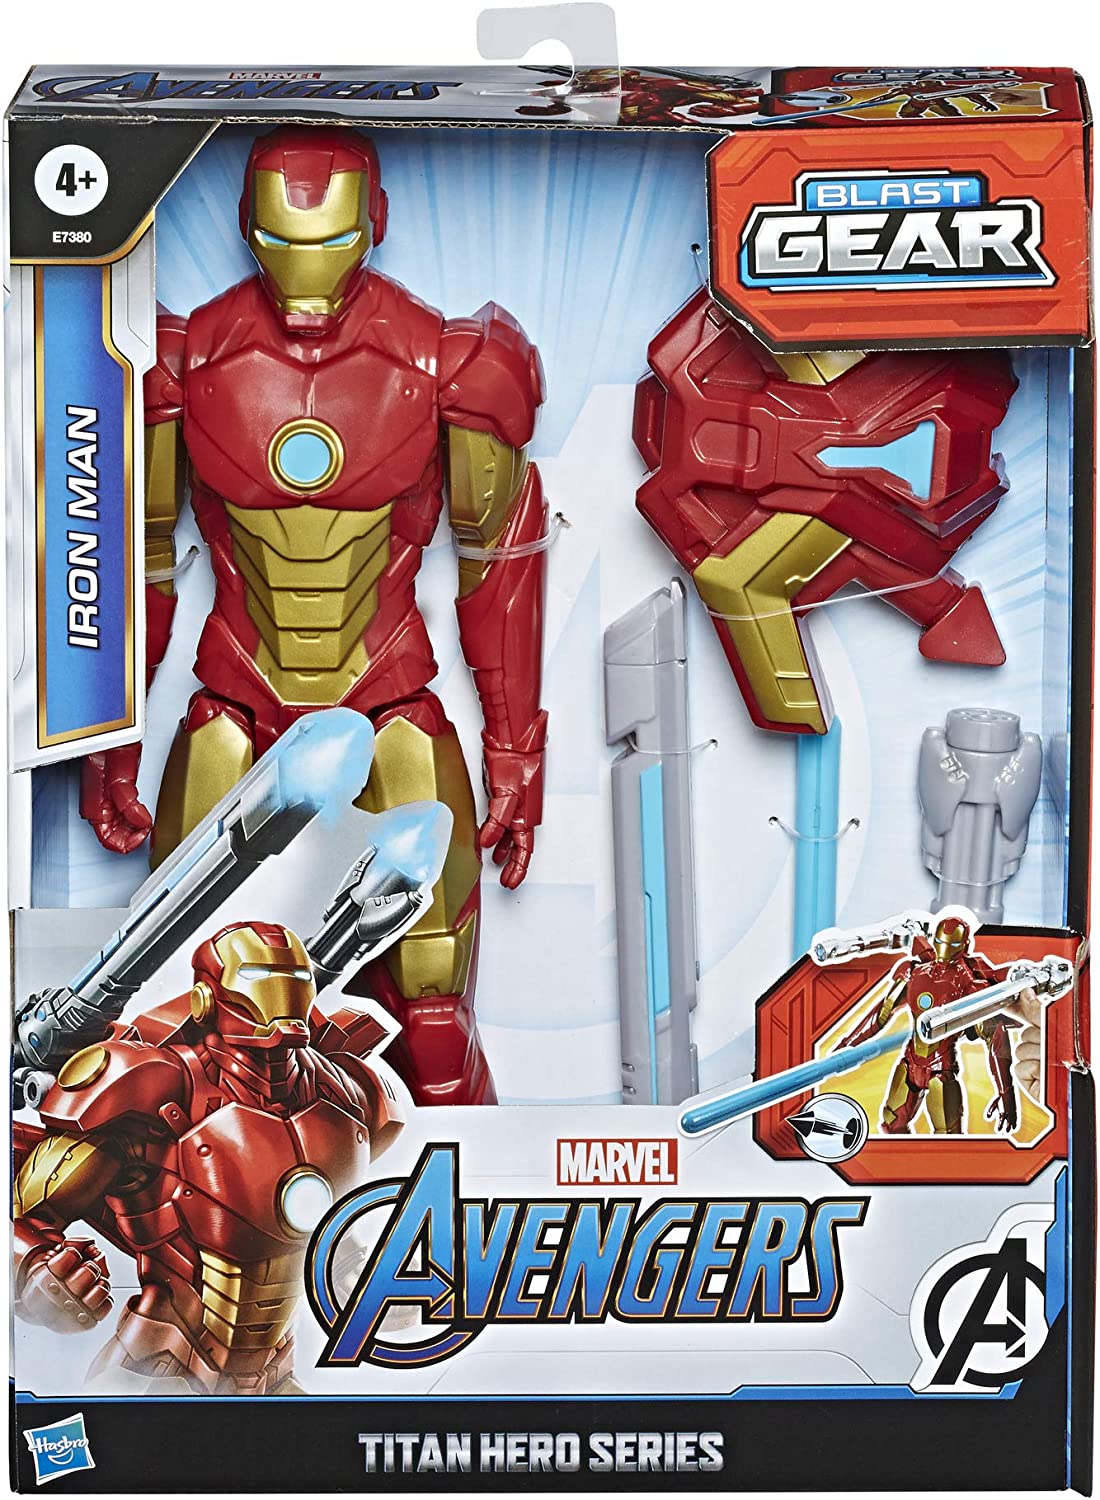 Avengers Marvel Titan Hero Series Blast Gear Iron Man Action